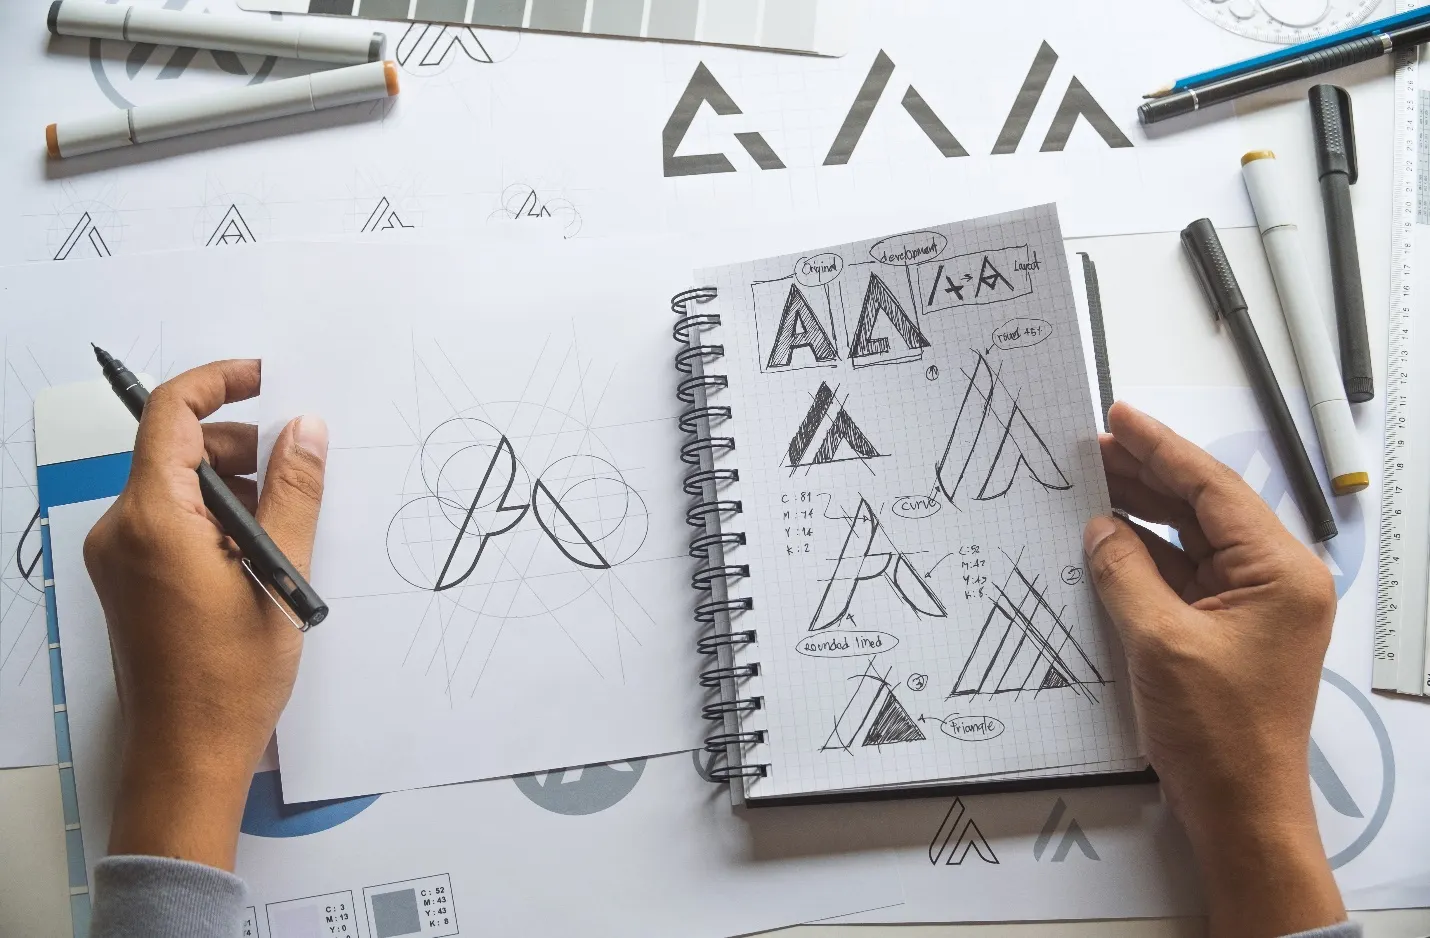 Grafikdesigner mit Skizzen und Ideen für ein Logo.  